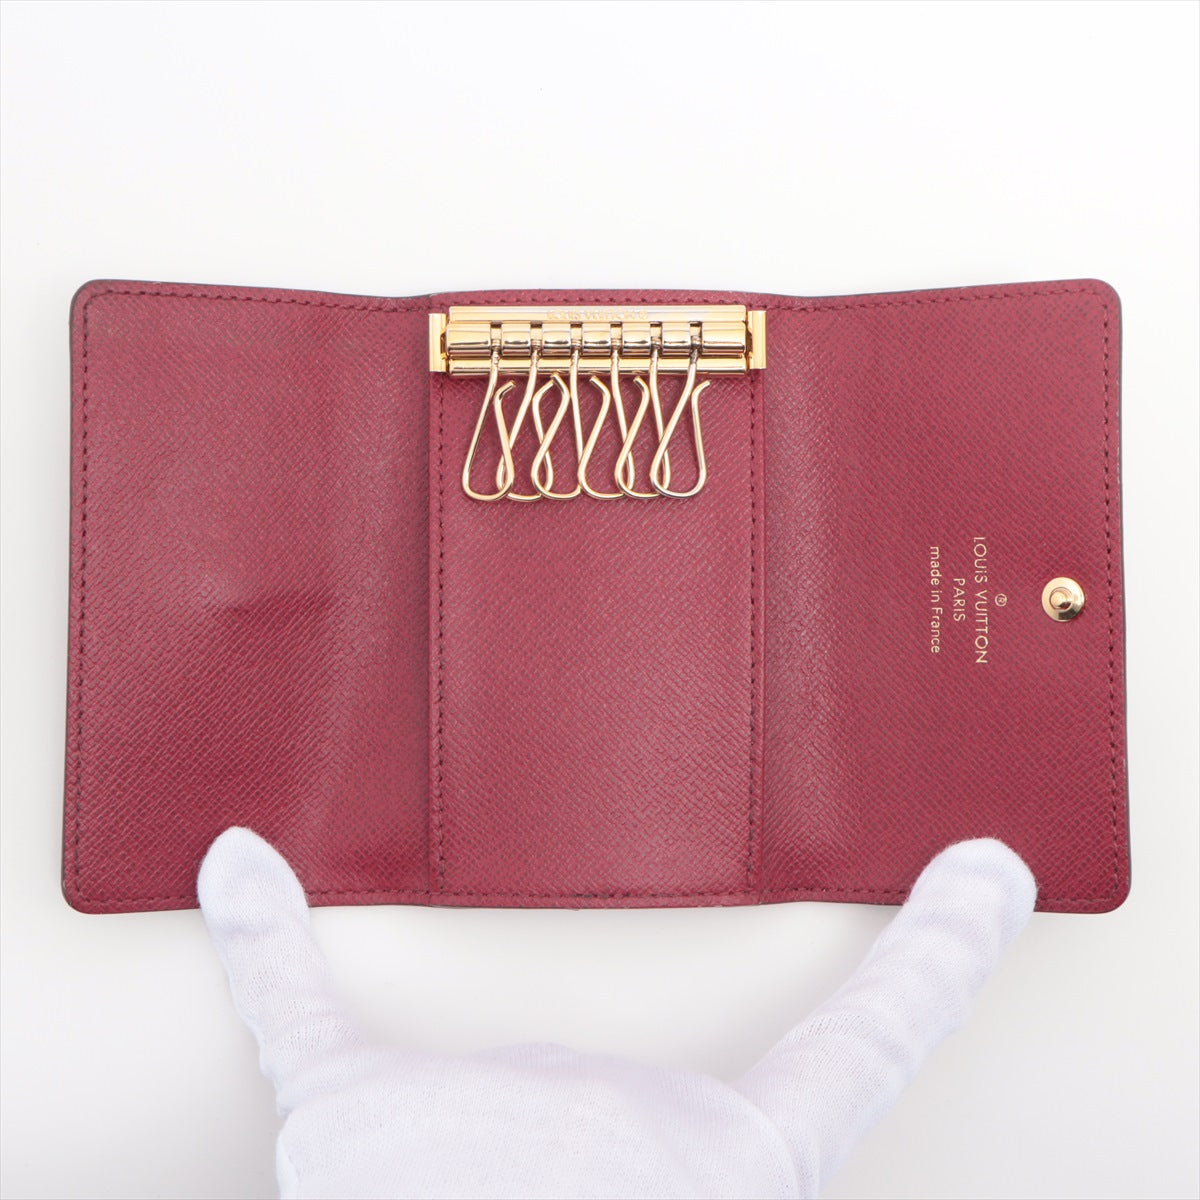 Louis Vuitton Monogram Multiclés 6 M60701 Fuschia Key Case responsive RFID